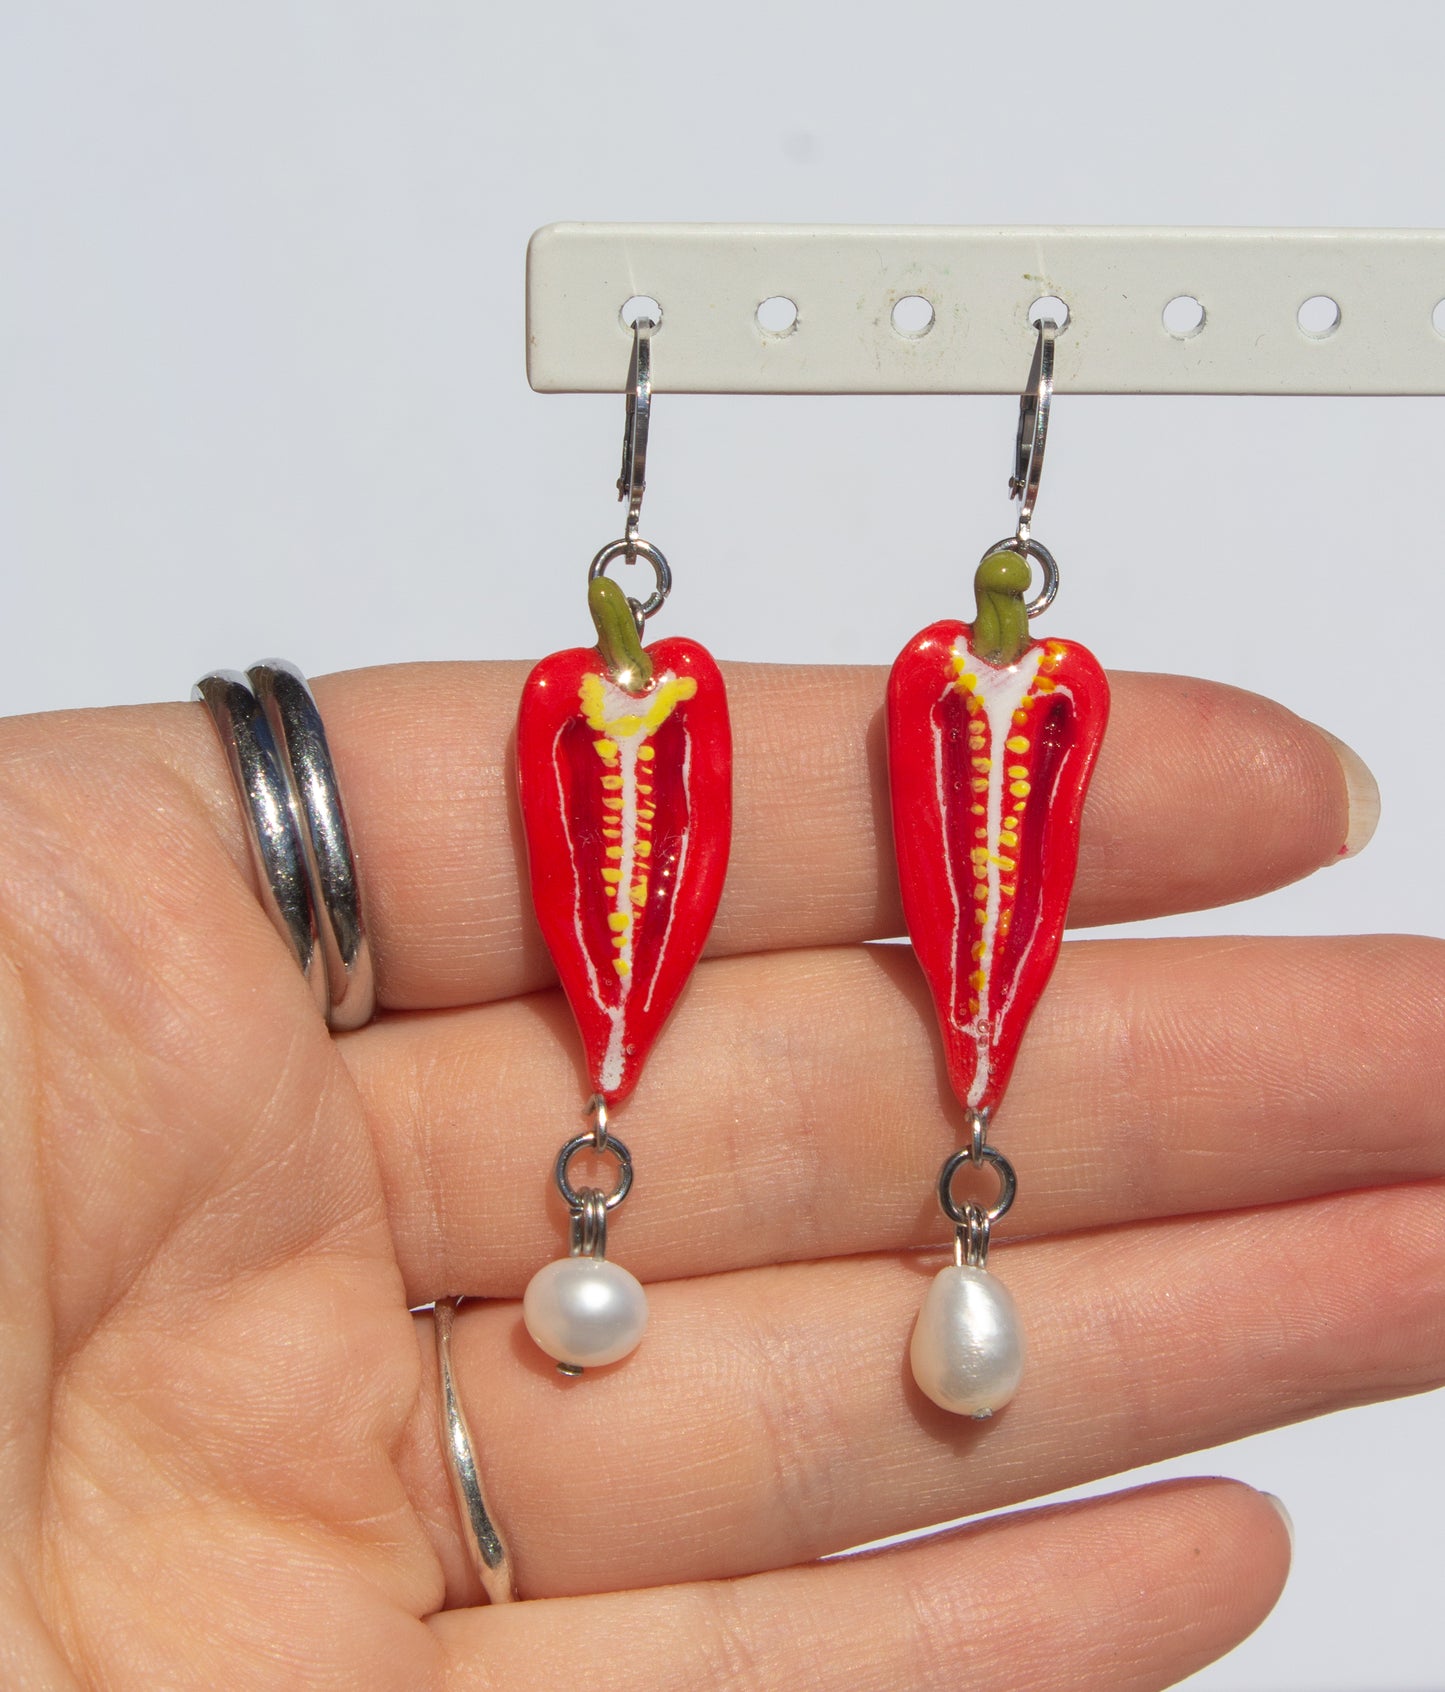 Chilli pepper earrings